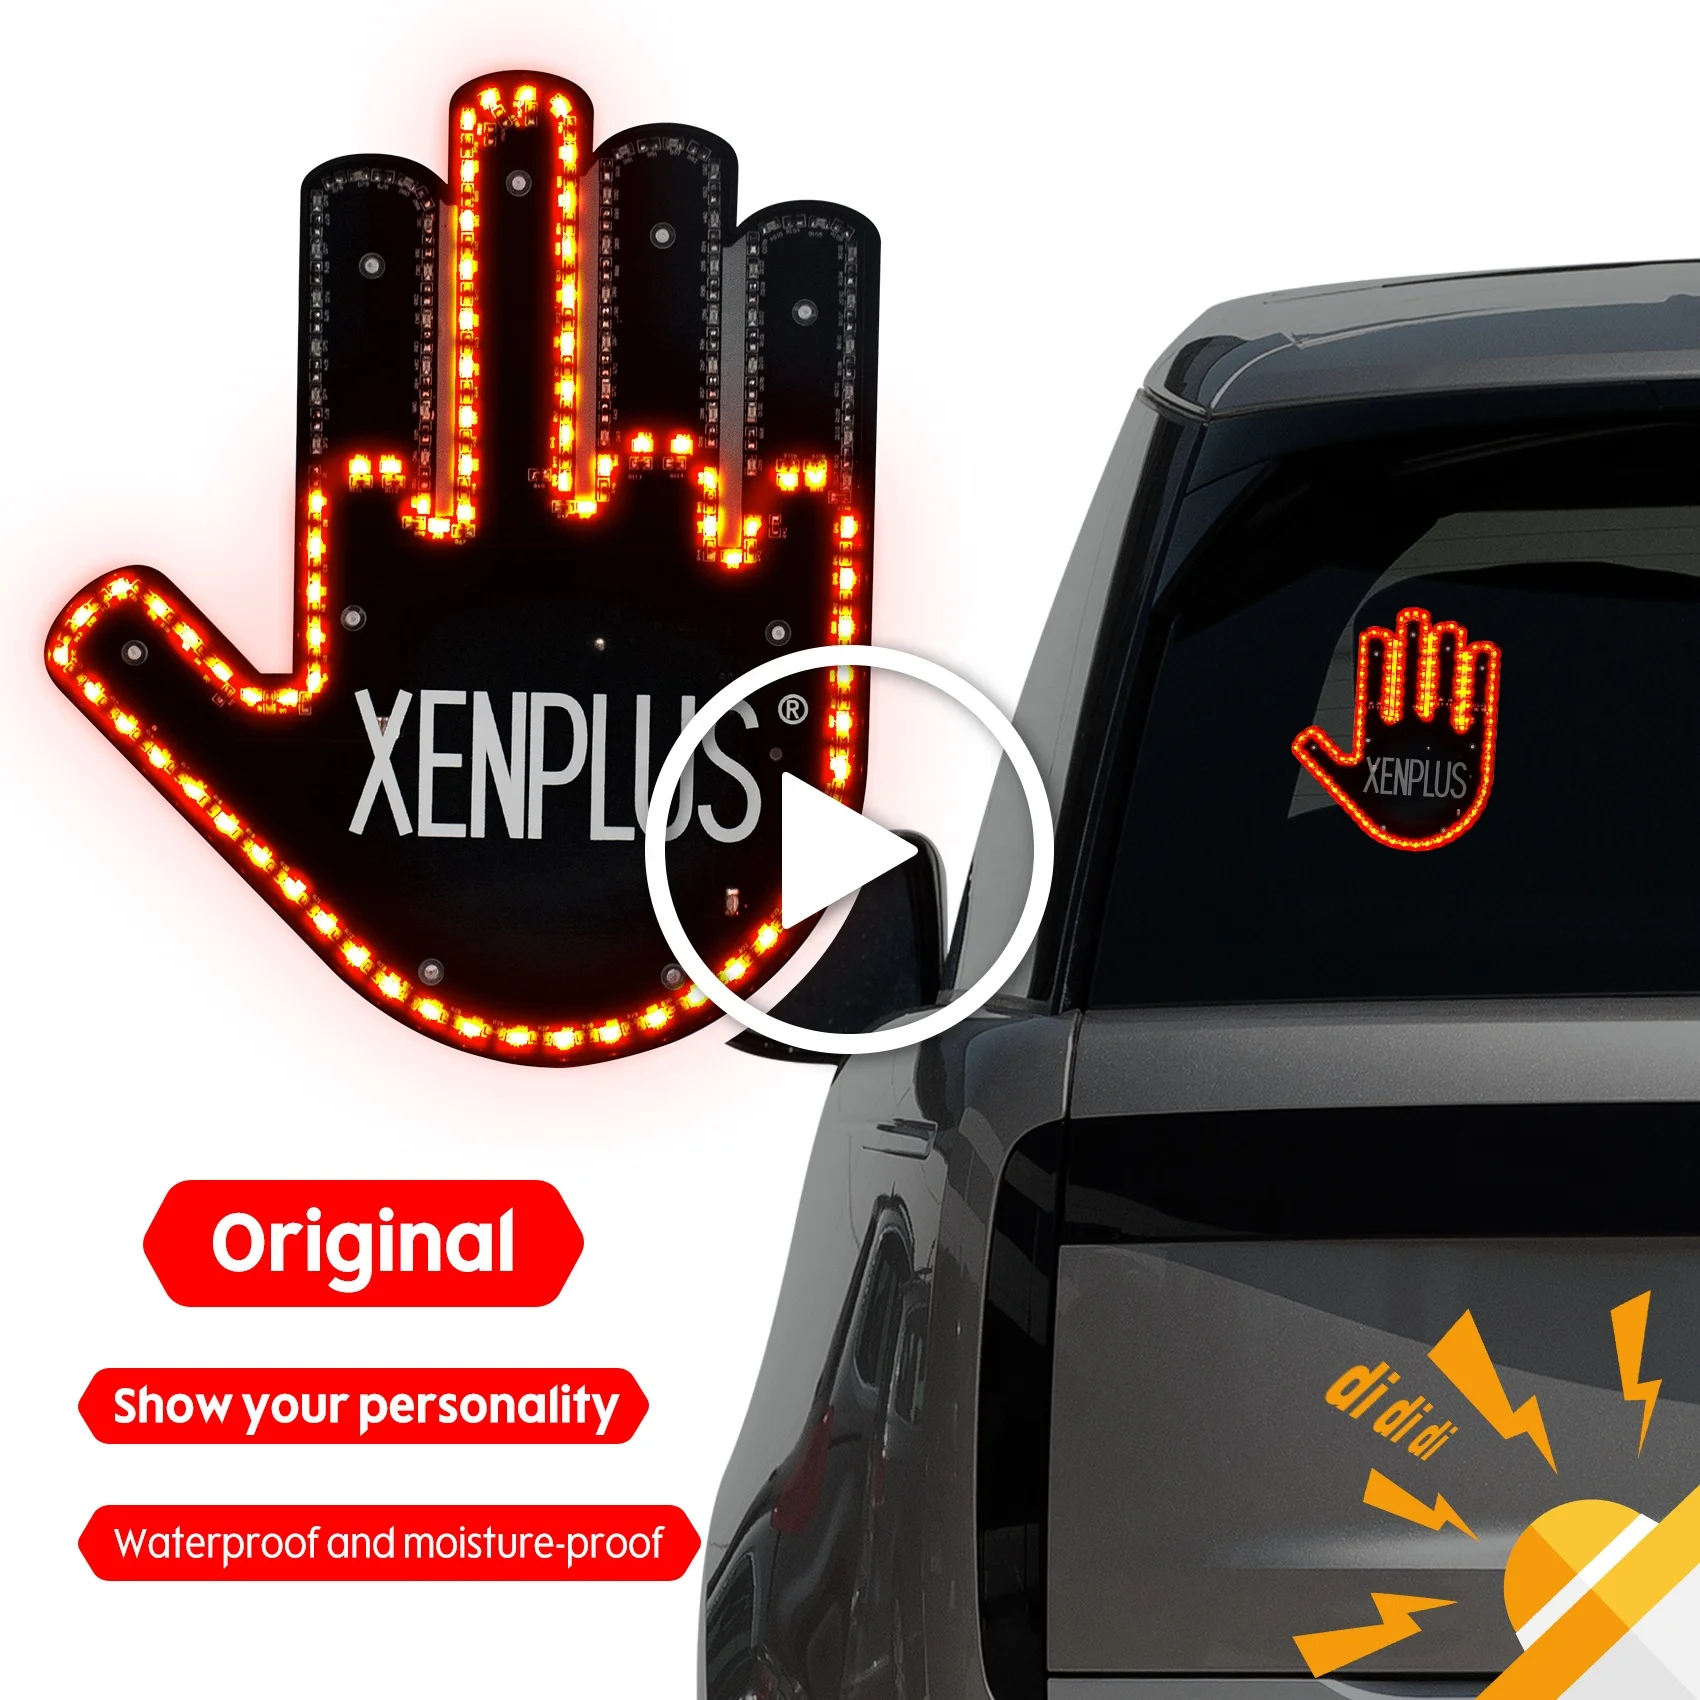 Autozubehör für Männer, Fun Car Finger Light mit Germany